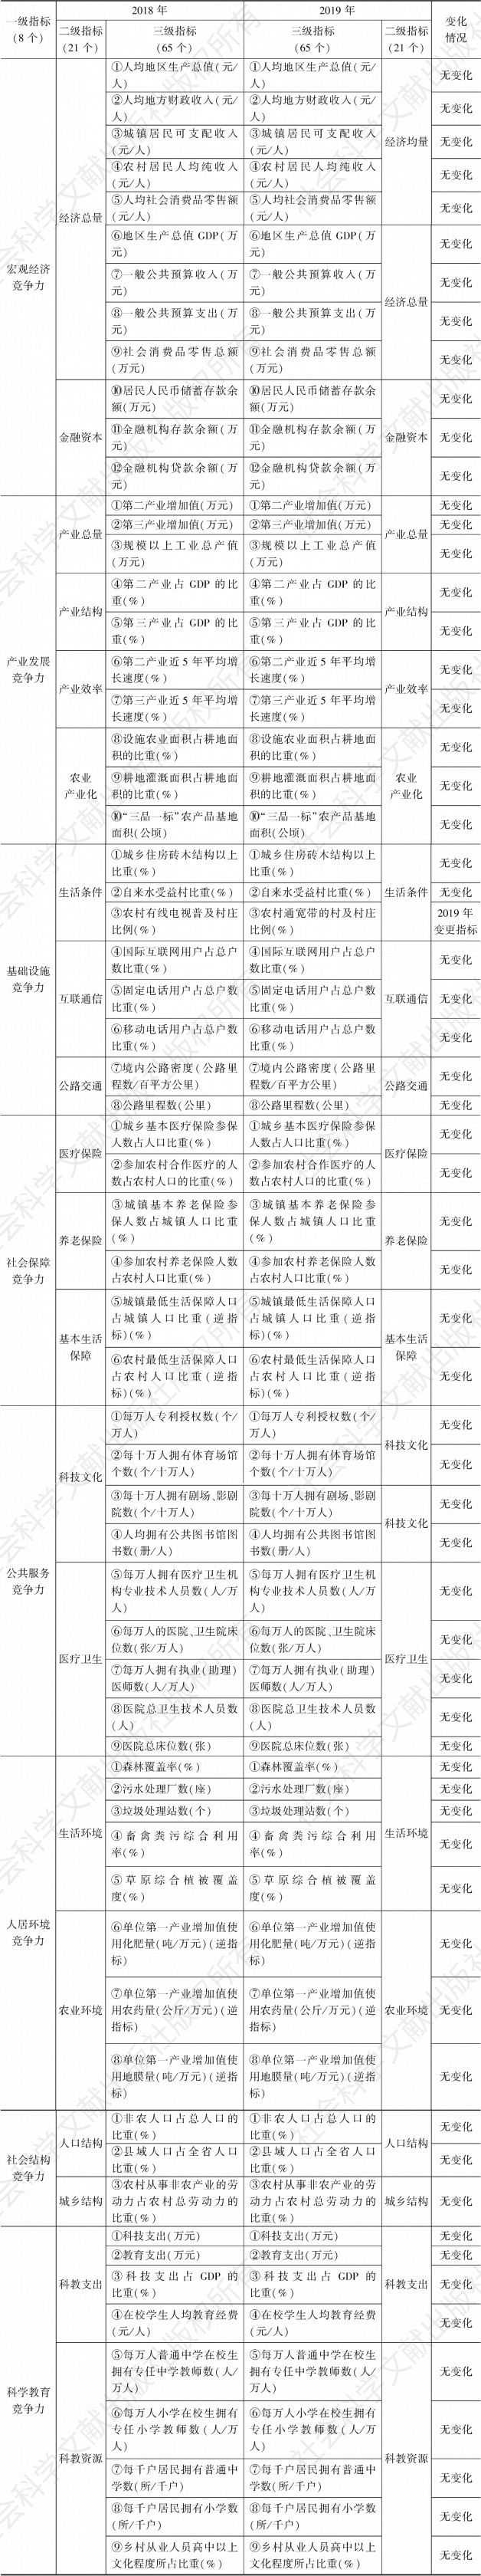 表1 2019年甘肃省县域竞争力评价指标体系